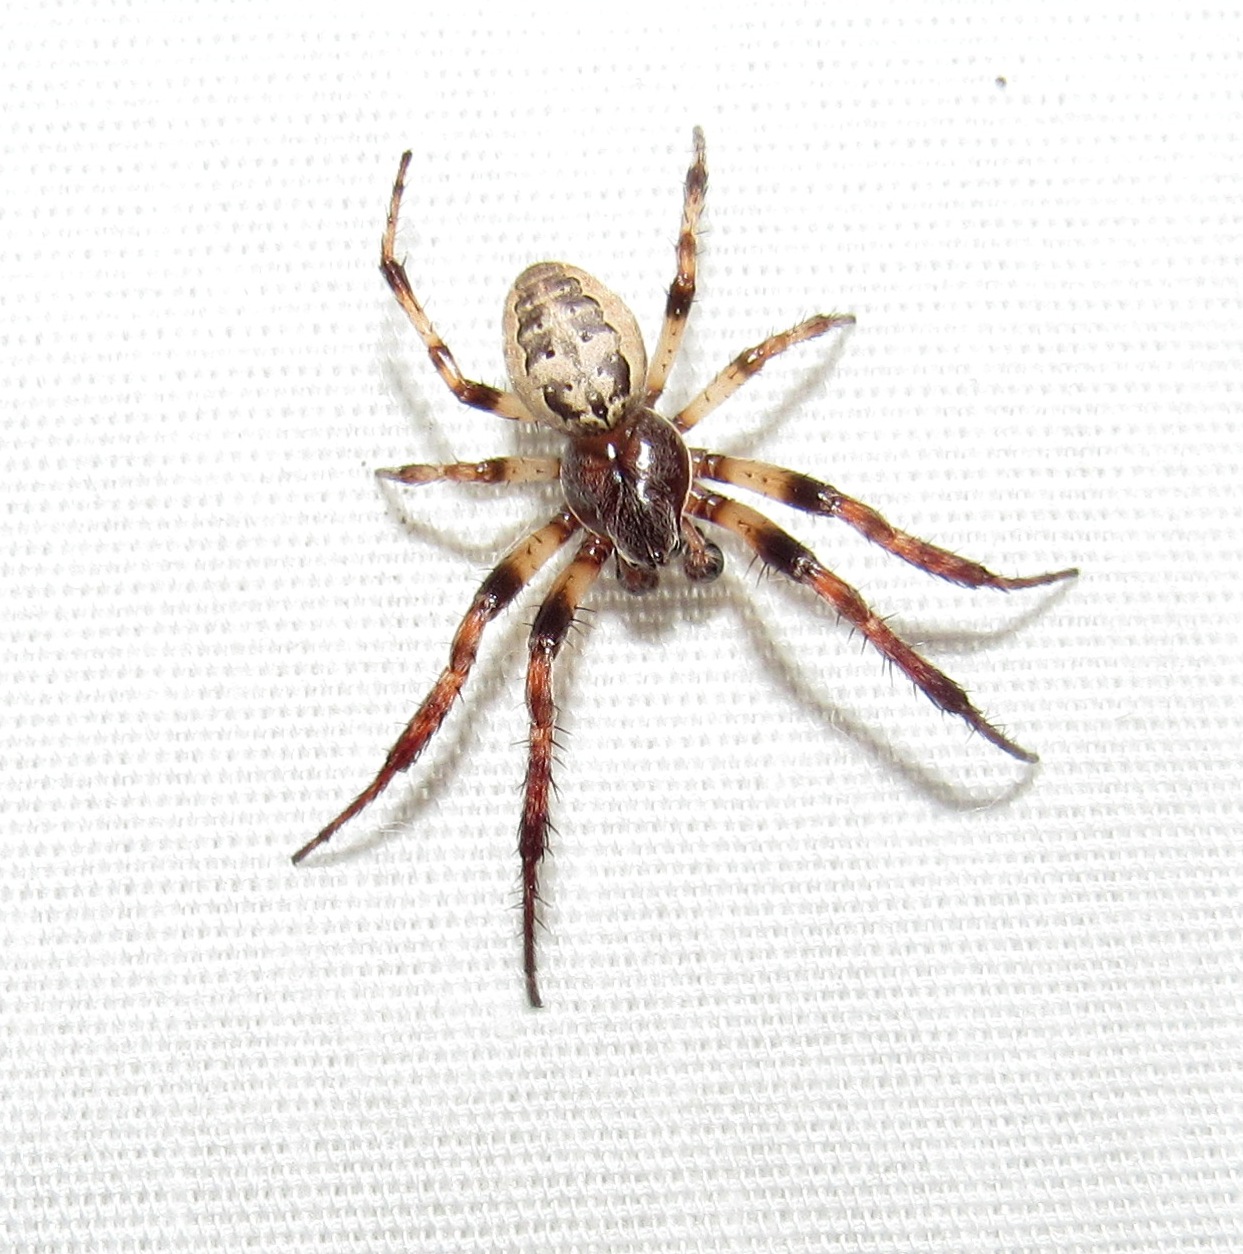 Dark spider with white line down the back - Eriophora ravilla